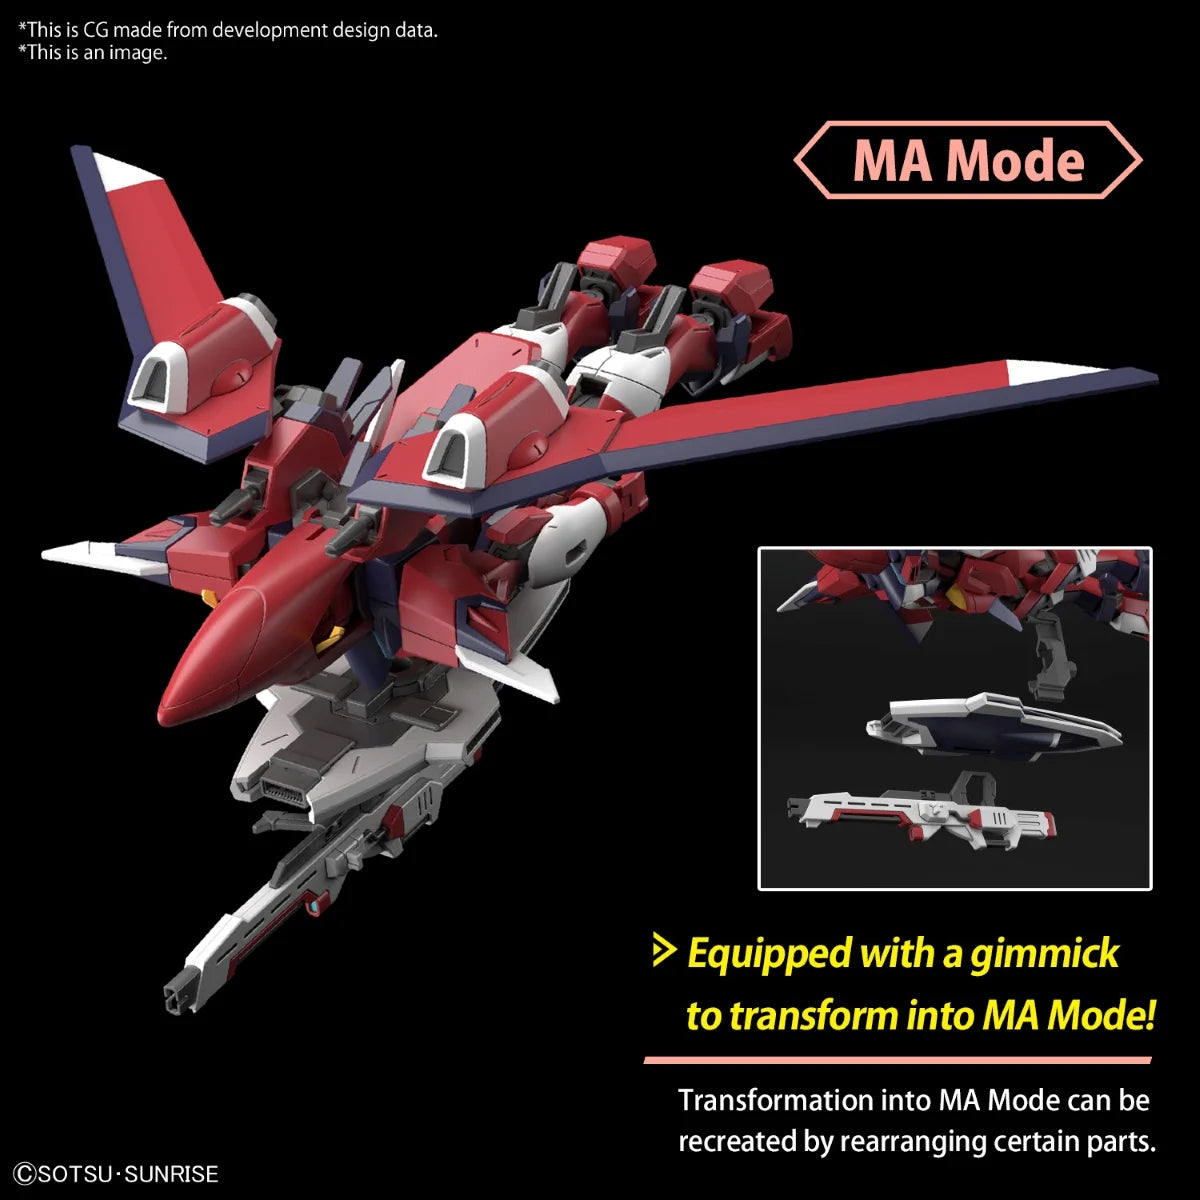 Gundam Model Kit 